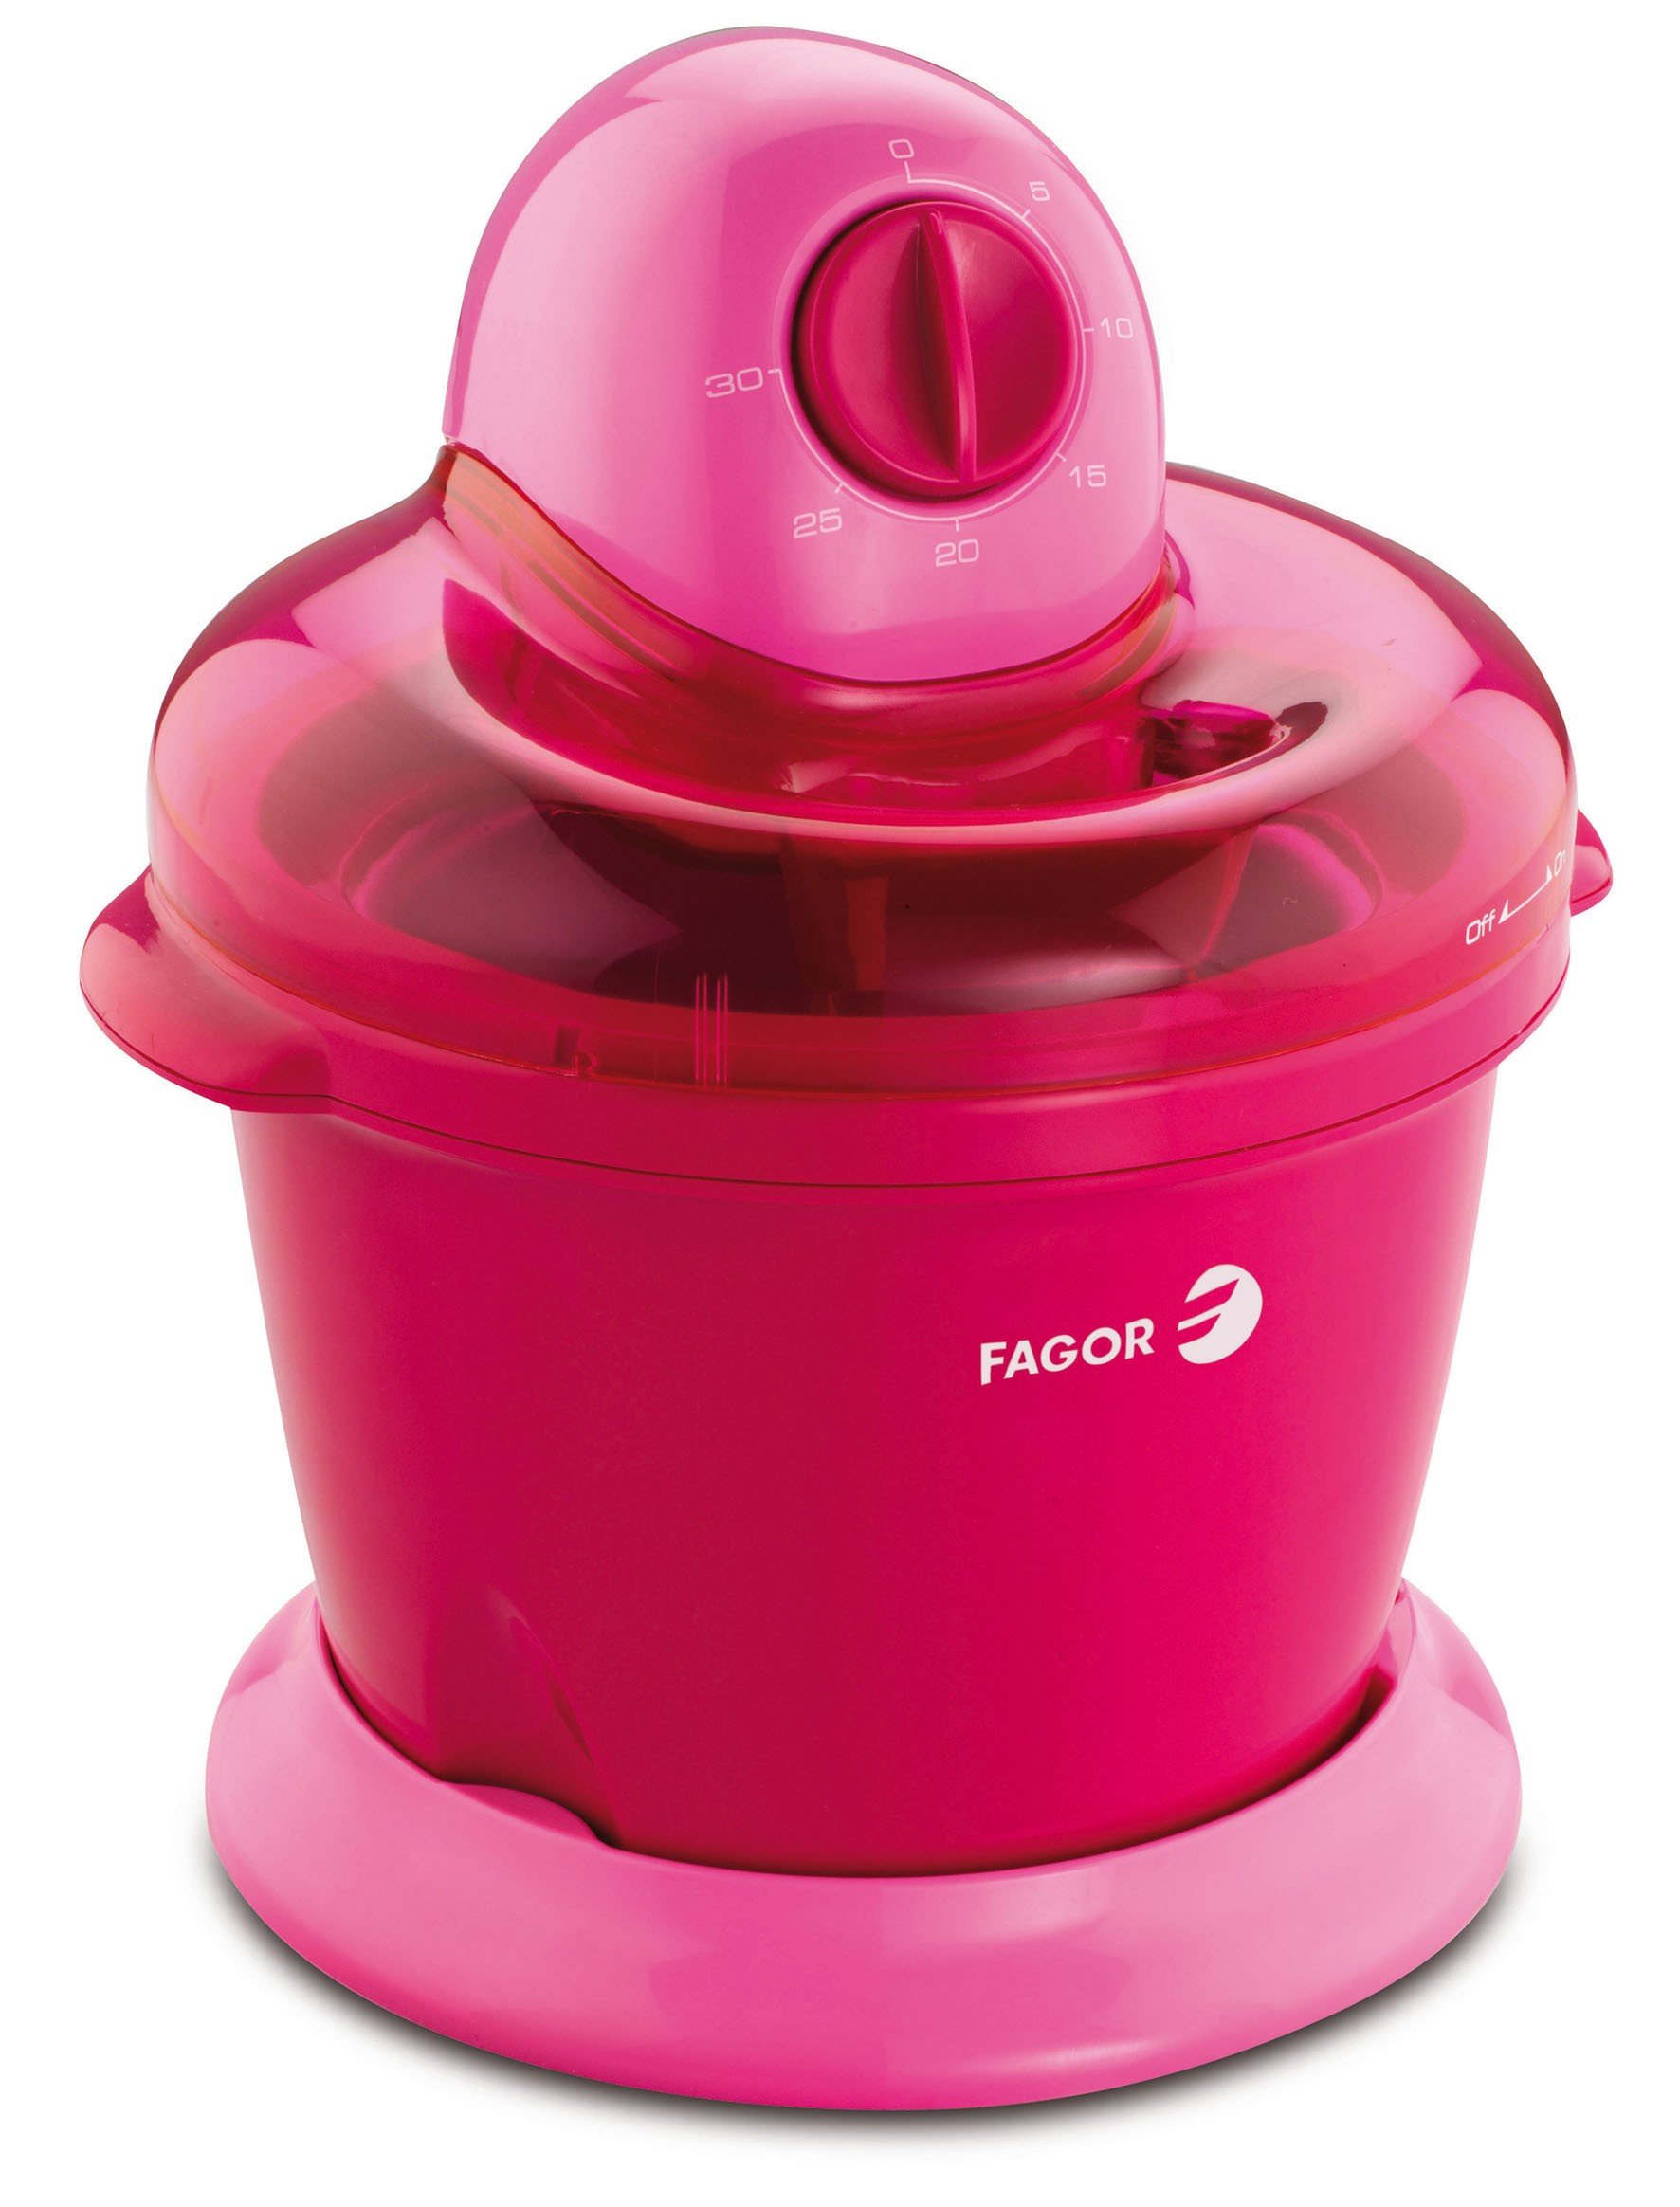 FAGOR ICE-15 Preparación de sorbetes y helados, 1,6 L, minutero 30min, fácil limpieza